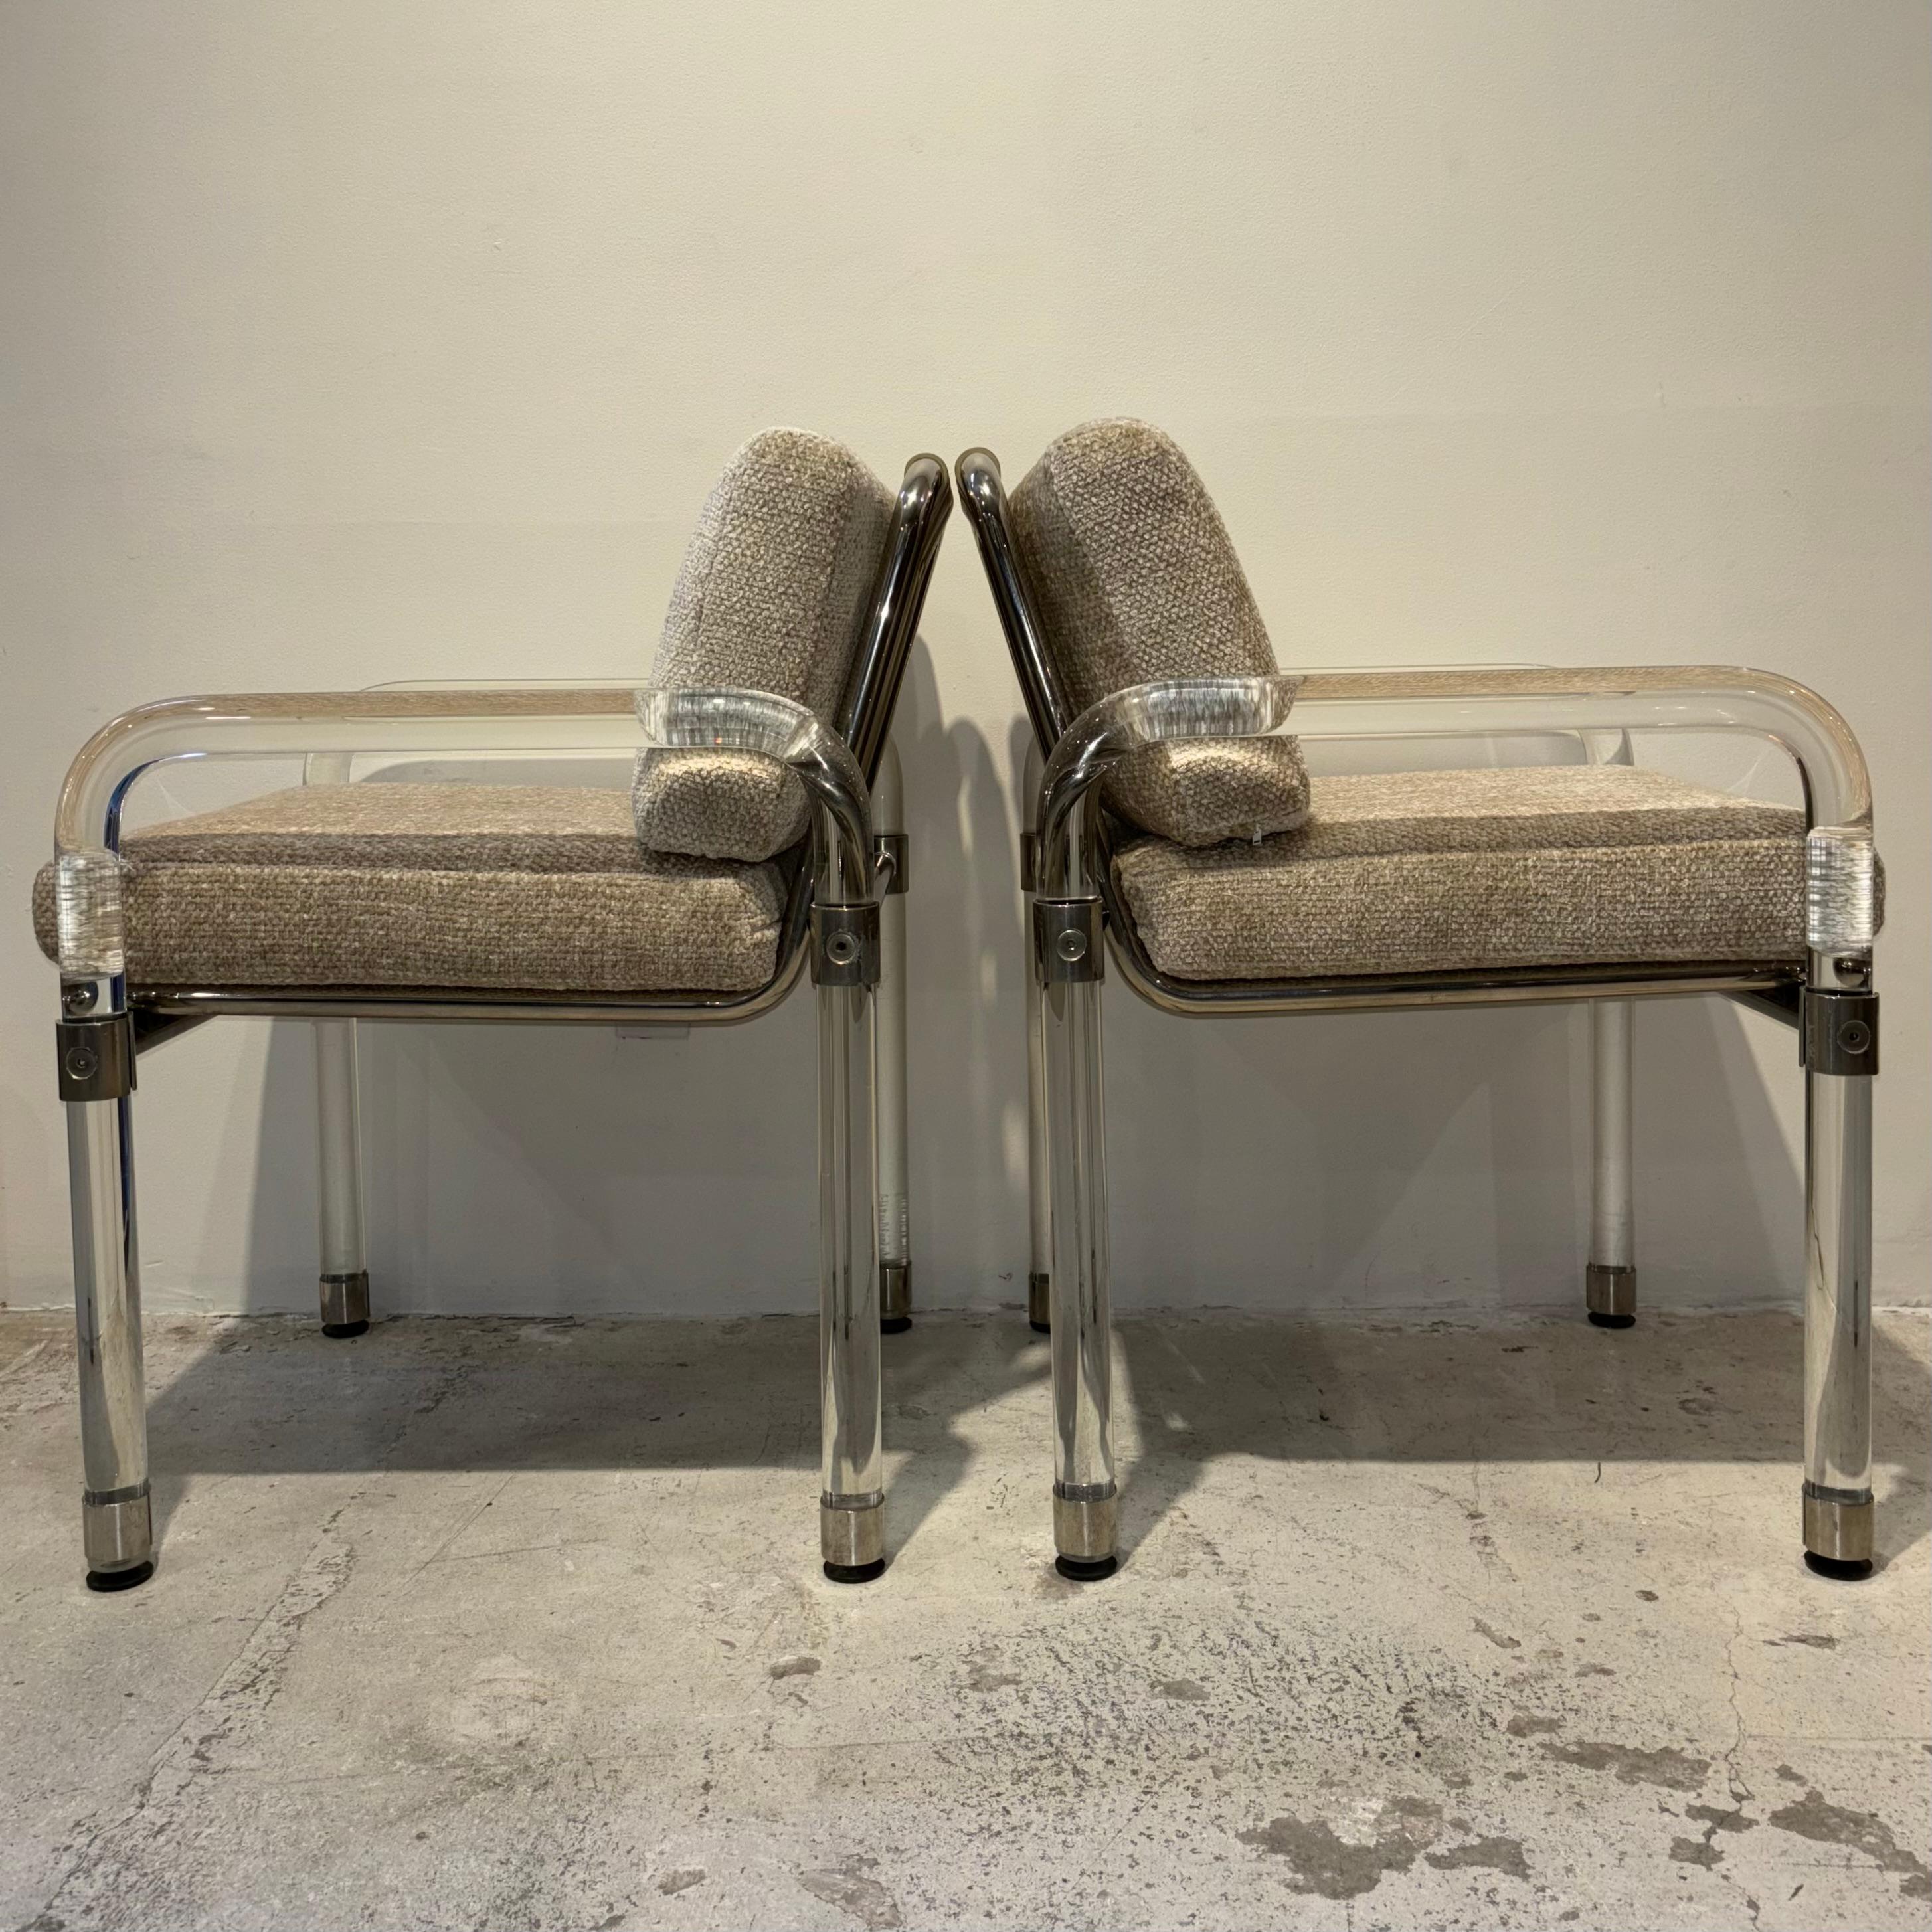 Paire de chaises en lucite et cuir crème avec détails chromés par Jeff Messerschmidt

Signé et daté à la main 